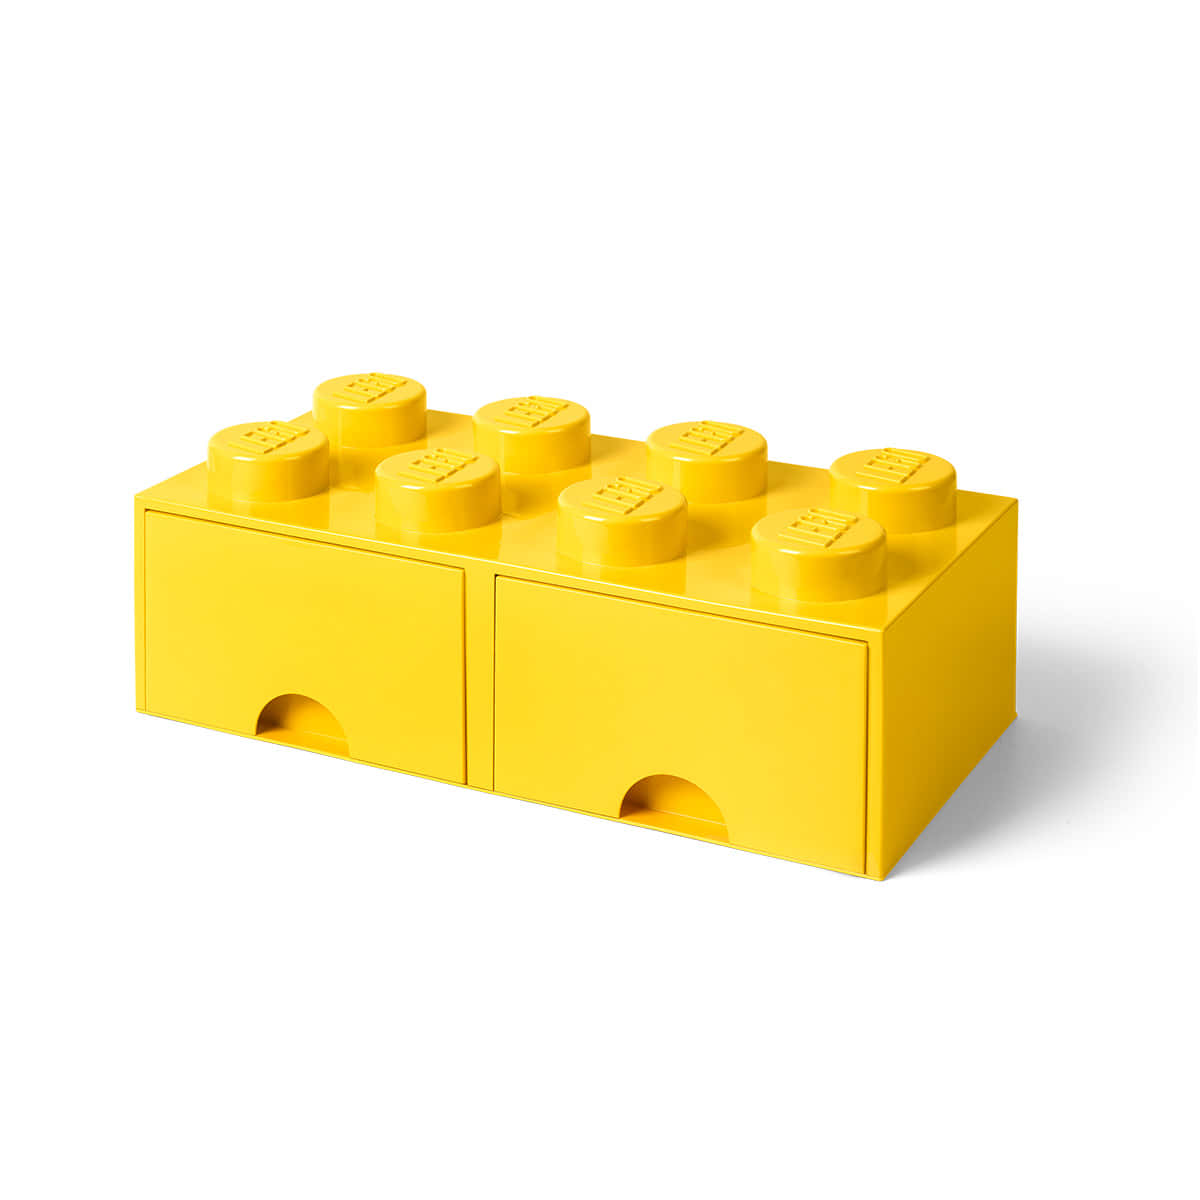 Imágenesde Lego.